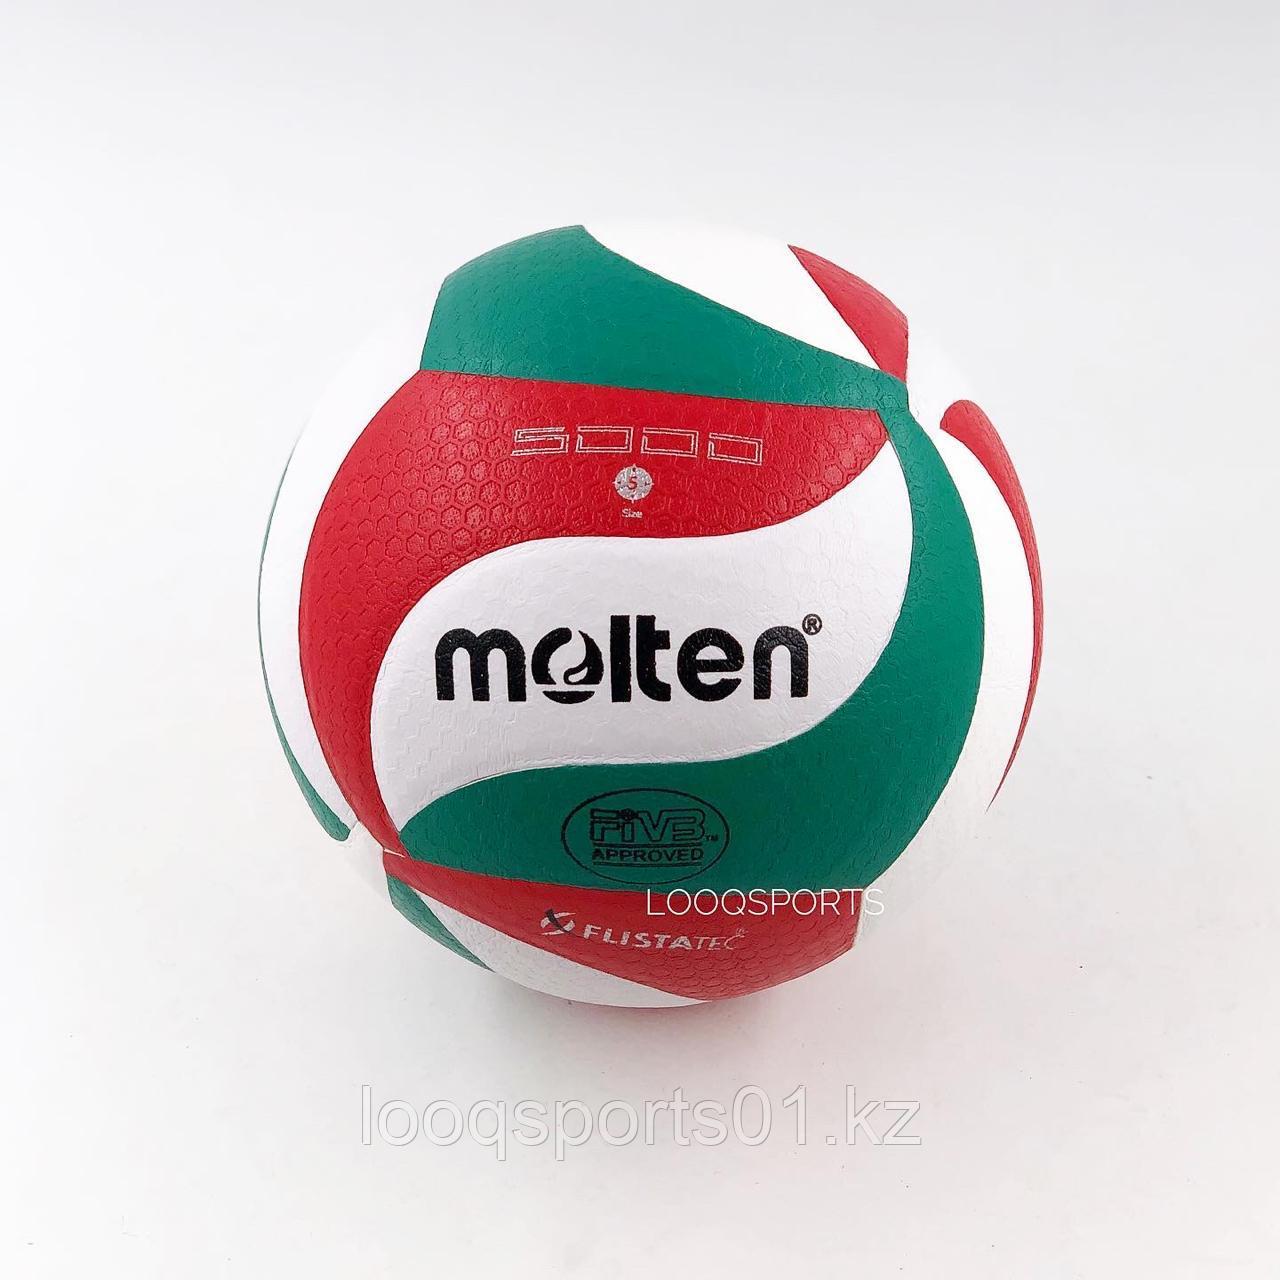 Мяч волейбольный Molten 5000